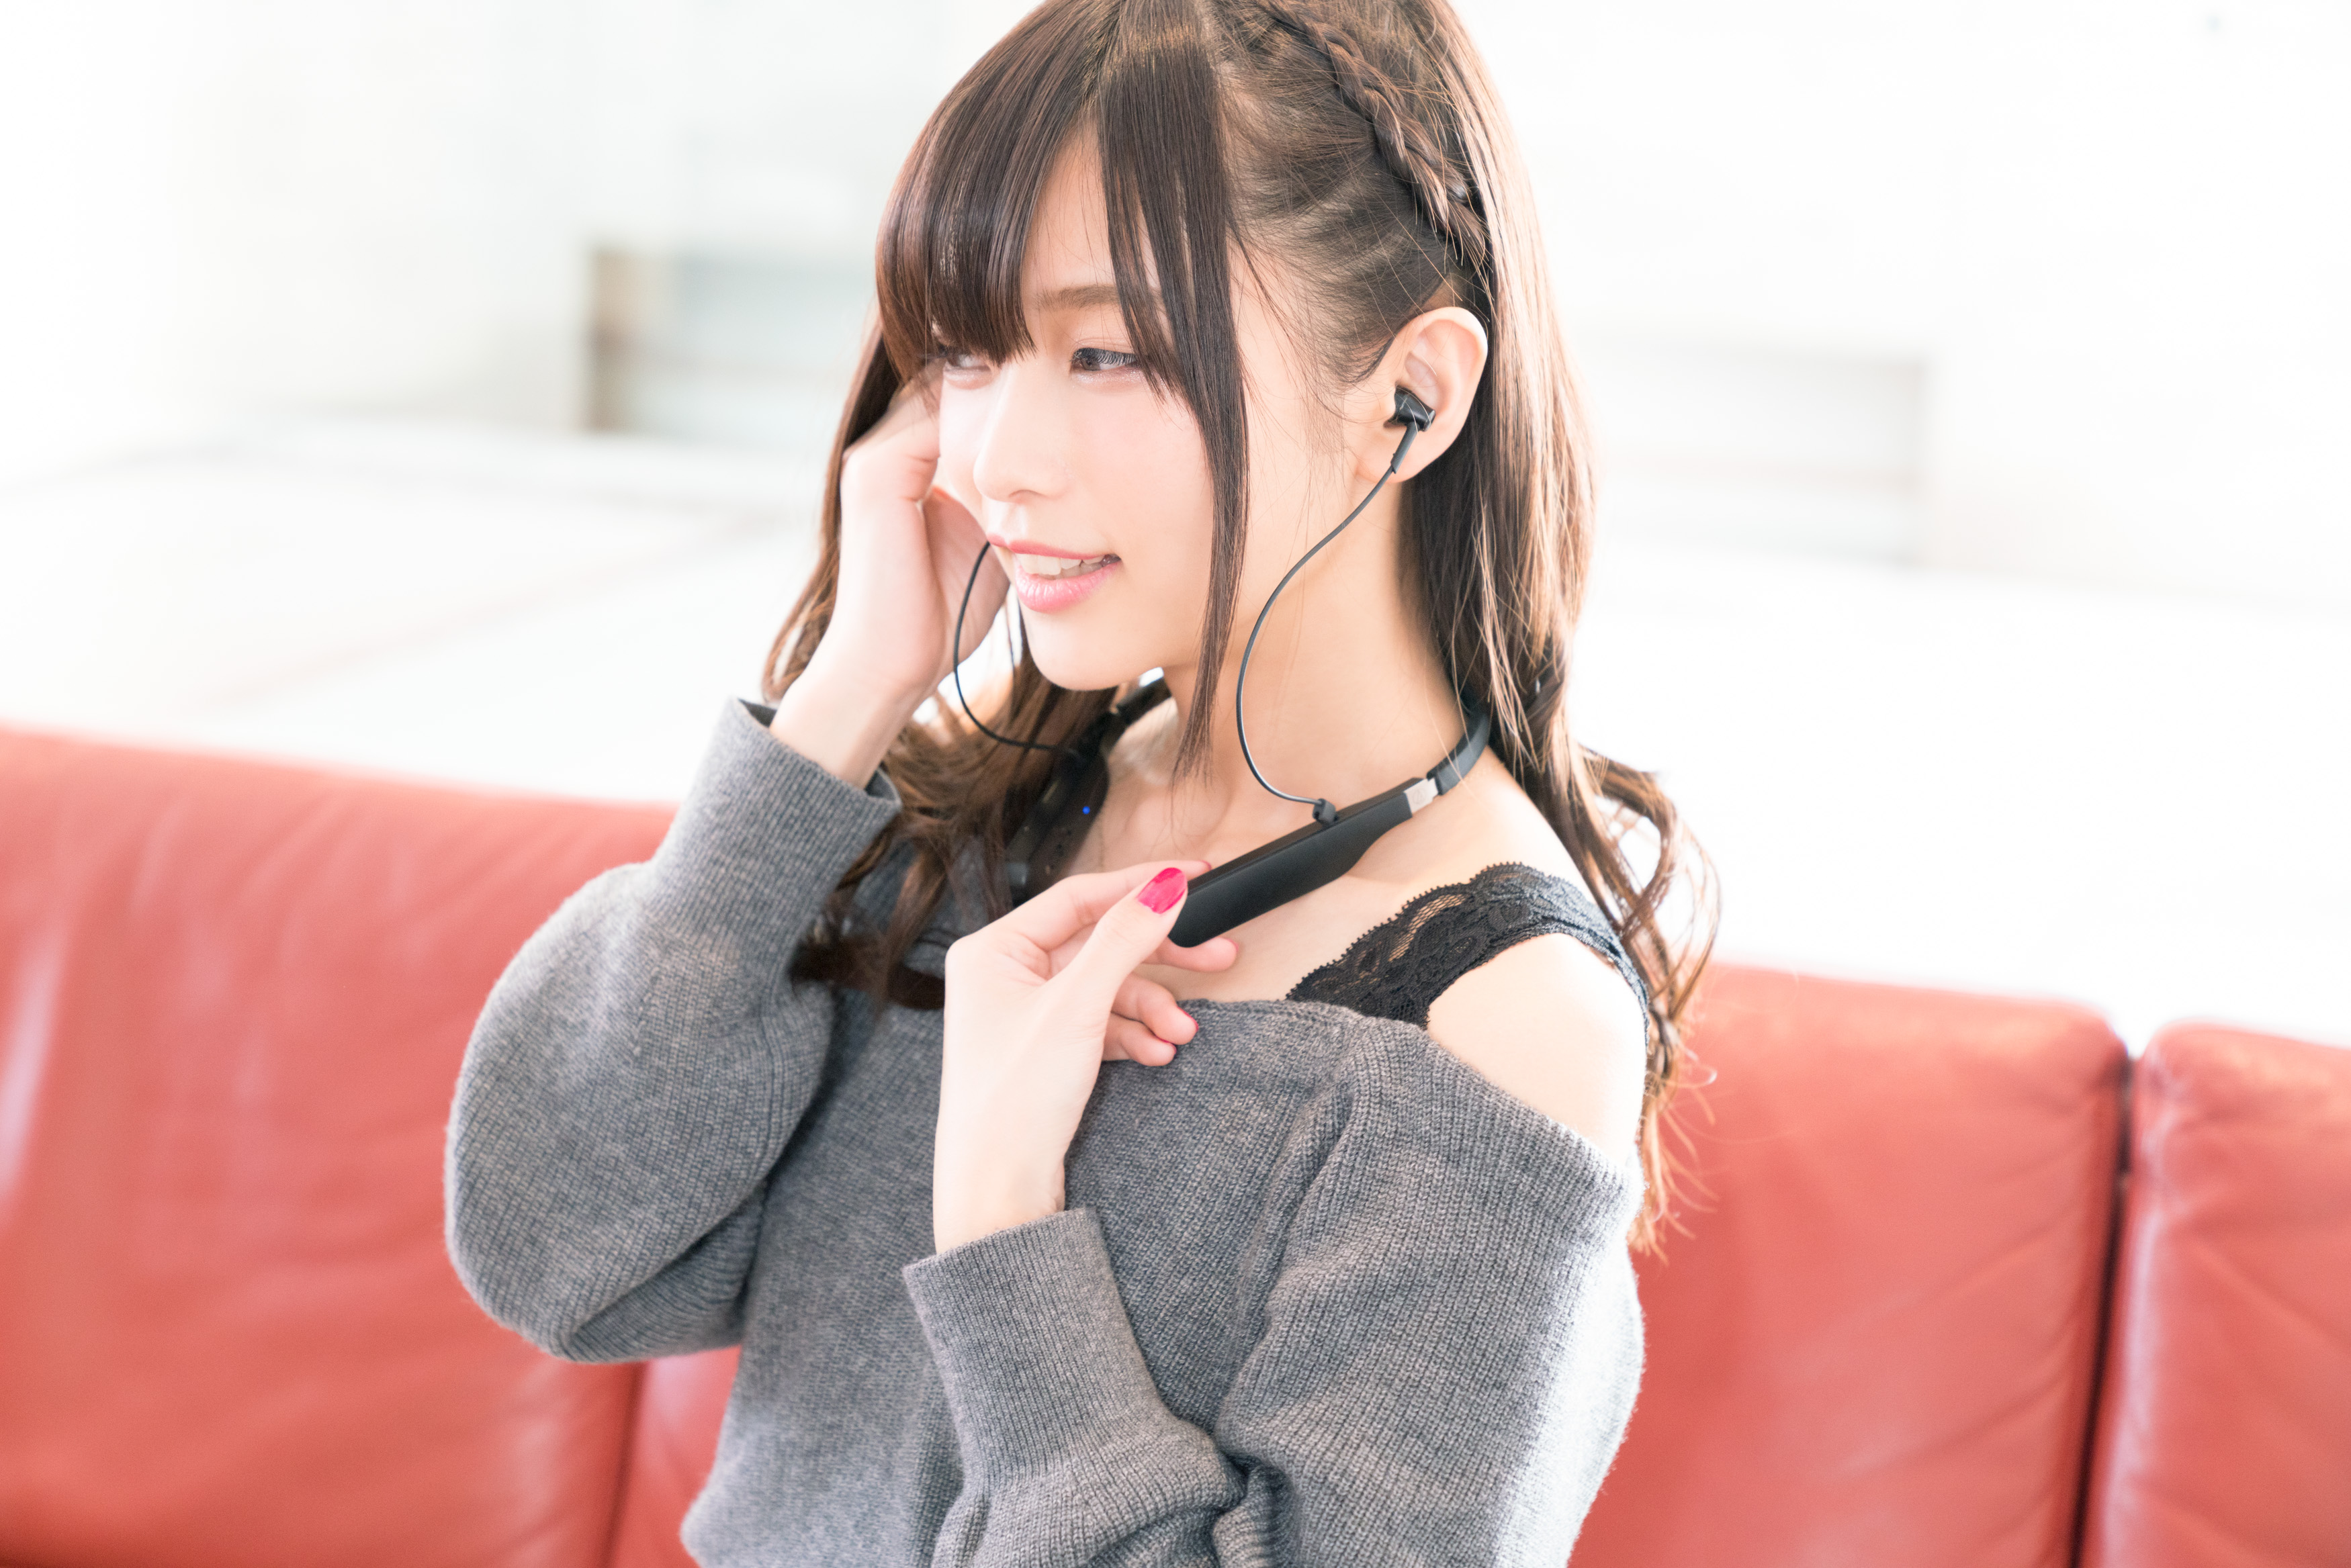 立花理香さんがフルデジタルワイヤレスヘッドホン「ATH-DSR5BT」を体験！ アーティストとしての耳にはどう聴こえた？